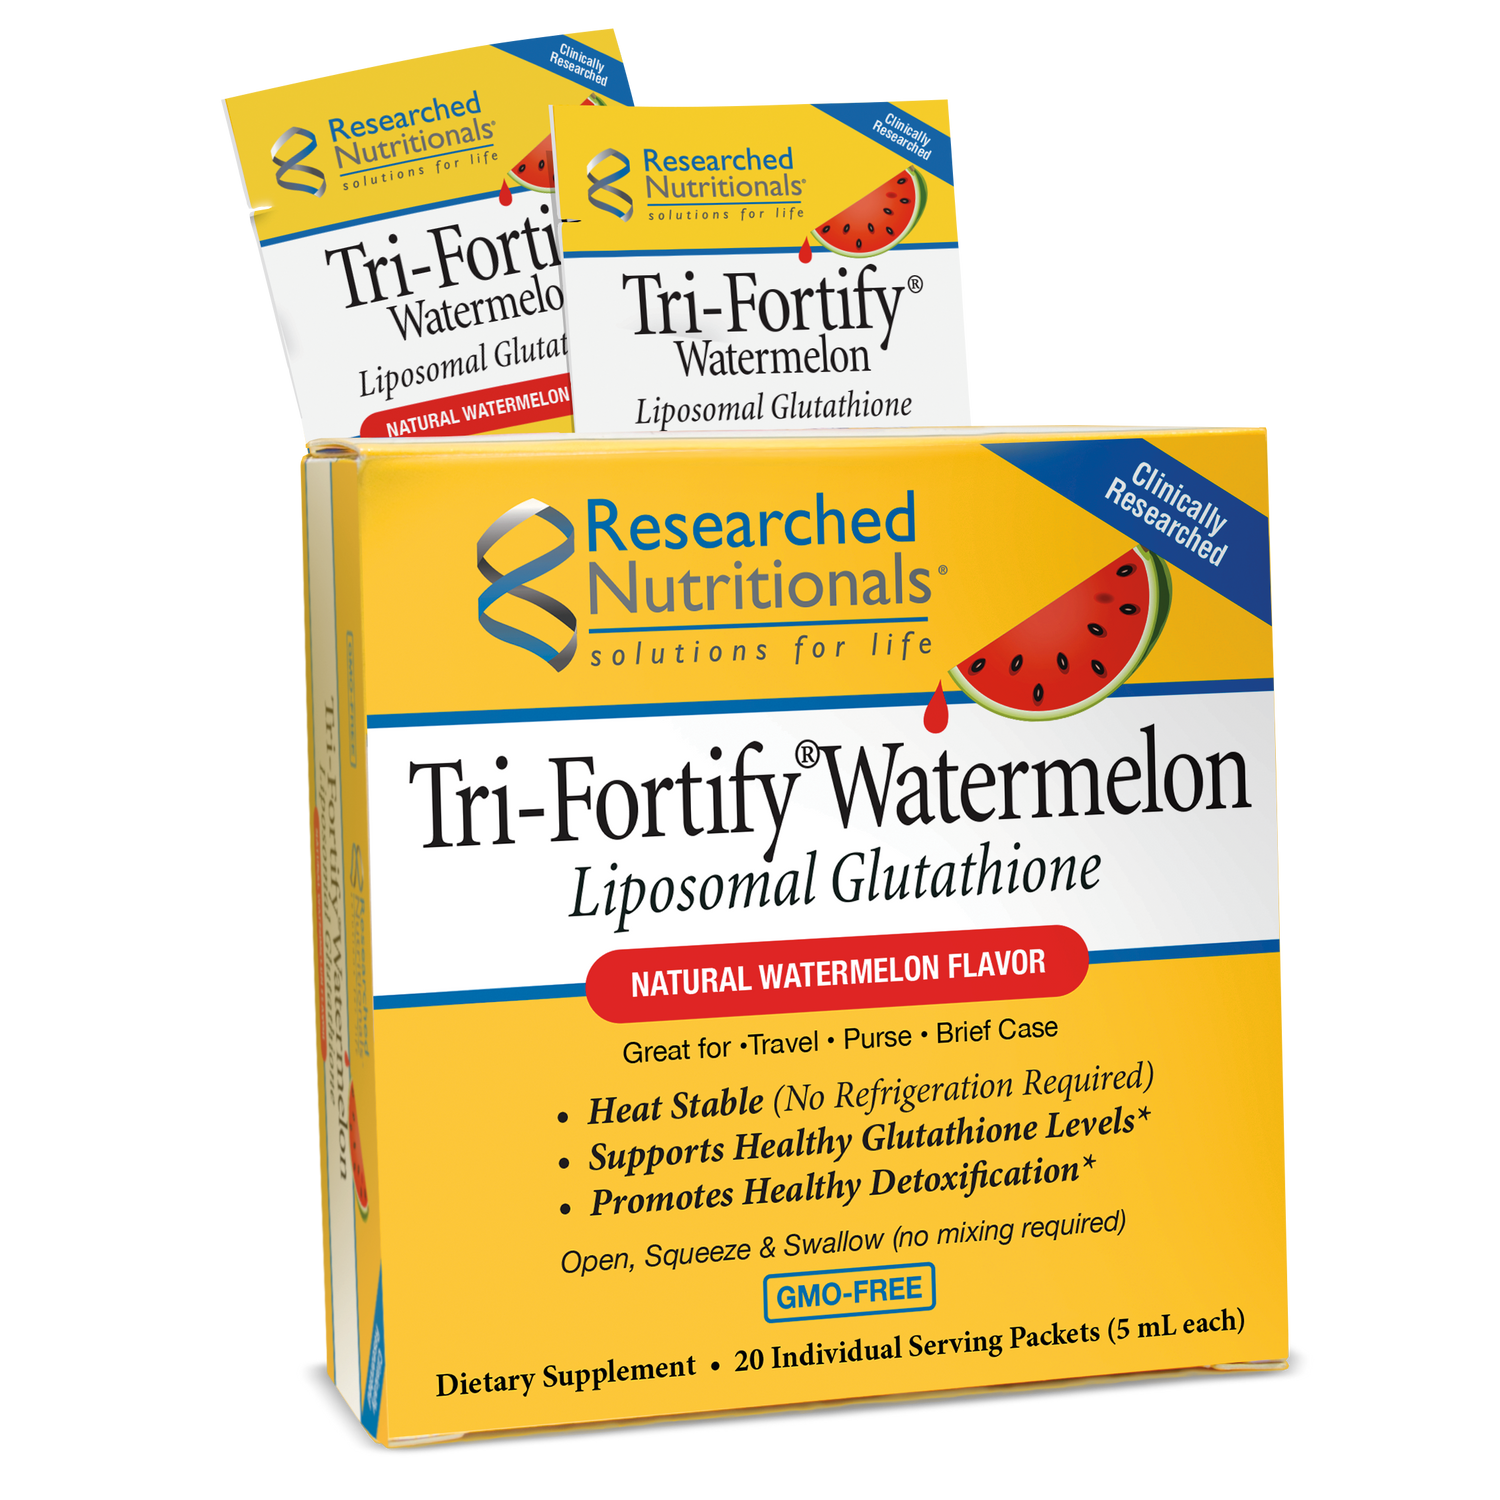 TRI-FORTIFY® LIPOSOMAL GLUTATHIONE TRAVEL PACKETS